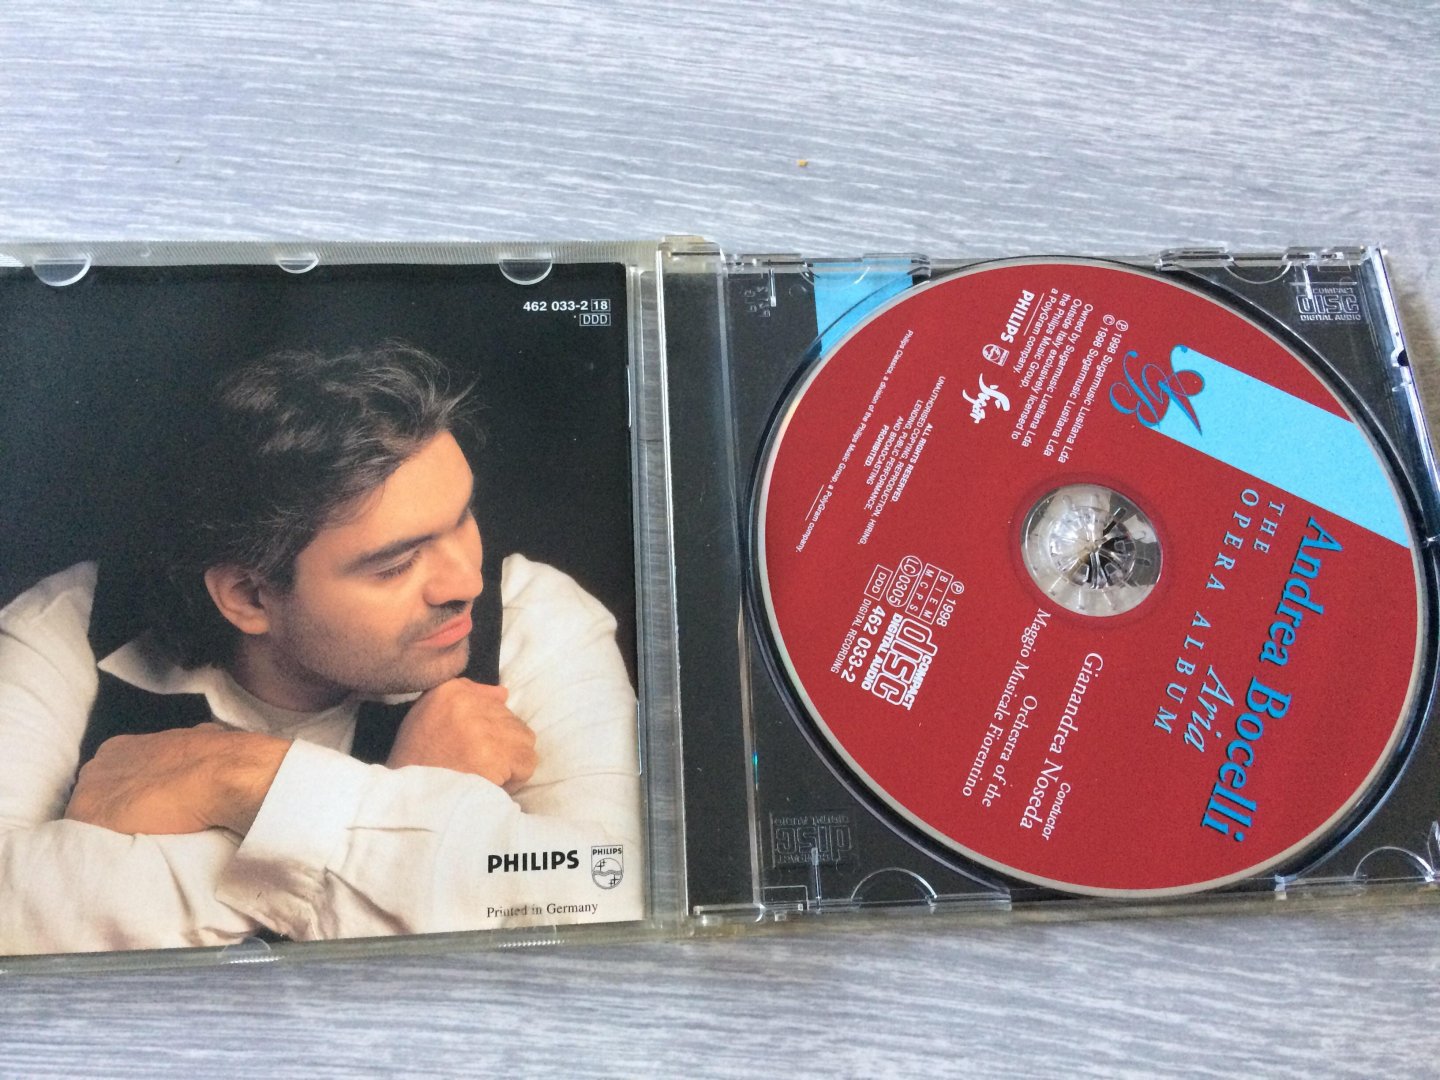 Andrea Bocelli - The Opera album Aria